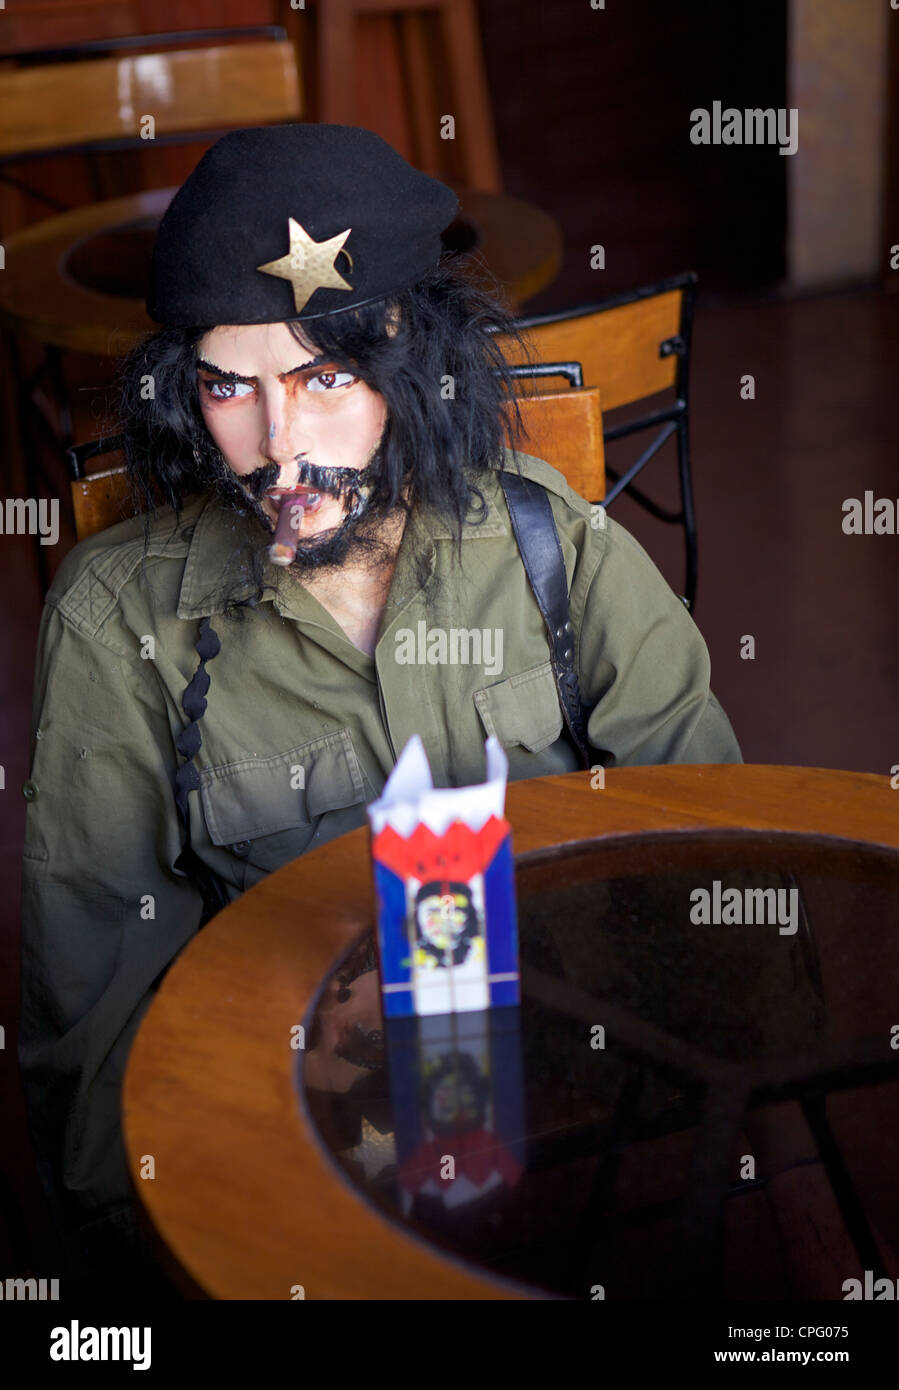 Modell des Che Guevara, sitzen am Tisch hinter Gittern Stockfotografie -  Alamy